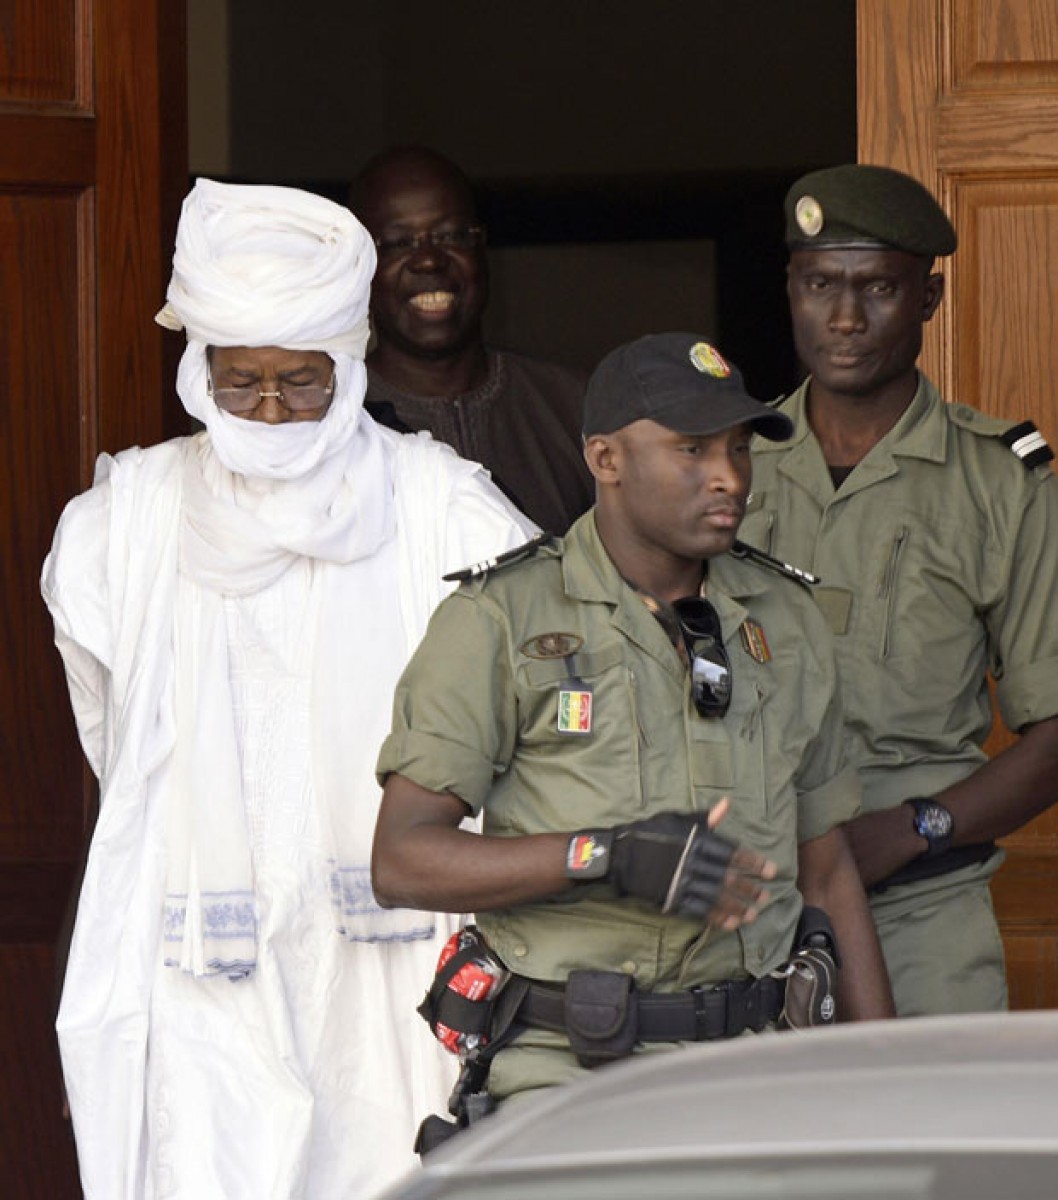 Ngày 20/7, tại thủ đô Dakar của Senegal, nhà cựu độc tài Cộng hòa Chad Hissene Habre được đưa ra xét xử công khai với tội danh chống lại loài người tại phiên tòa đặc biệt do Liên minh châu Phi (AU) thành lập. Cựu độc tài Hissene Habre, 72 tuổi, bị bắt giam tại Senegal từ tháng 6/2013. Theo các tổ chức nhân quyền khu vực và quốc tế, đã có hơn 40.000 người thiệt mạng do sự đàn áp tàn bạo trong 8 năm ông Hissene Habre cầm quyền (từ giữa năm 1982- 1990). Trong ảnh (tư liệu): Cựu độc tài Hissene Habre tại tòa án Dakar, Senegal ngày 3/6/2015. AFP/TTXVN